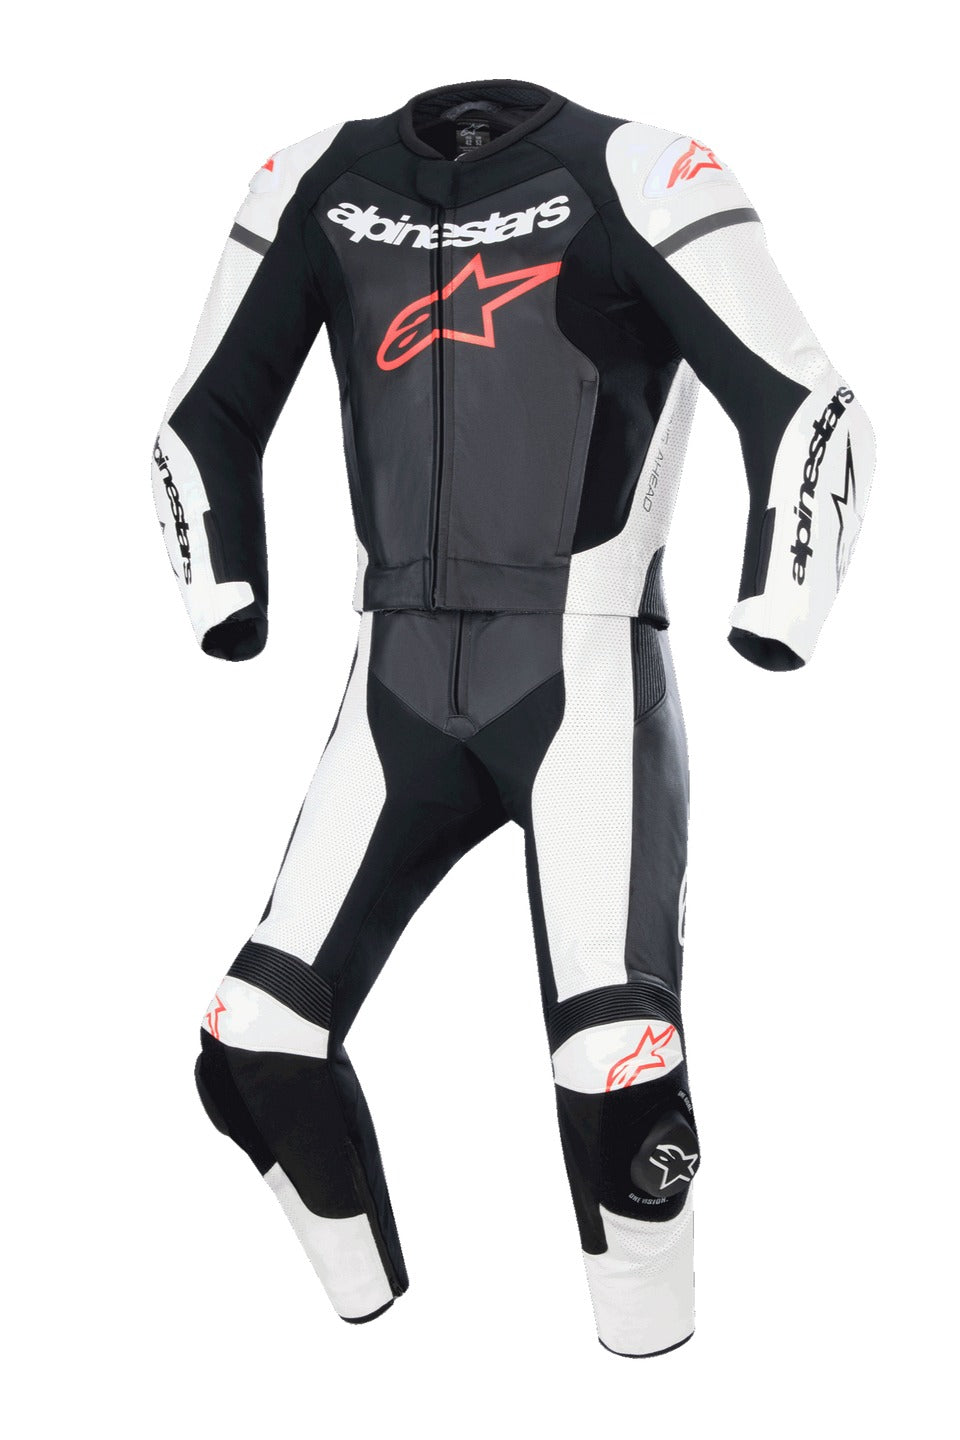 Alpinestars GP Force Lurv Racing Motorcycle Suit - ZEES MOTO